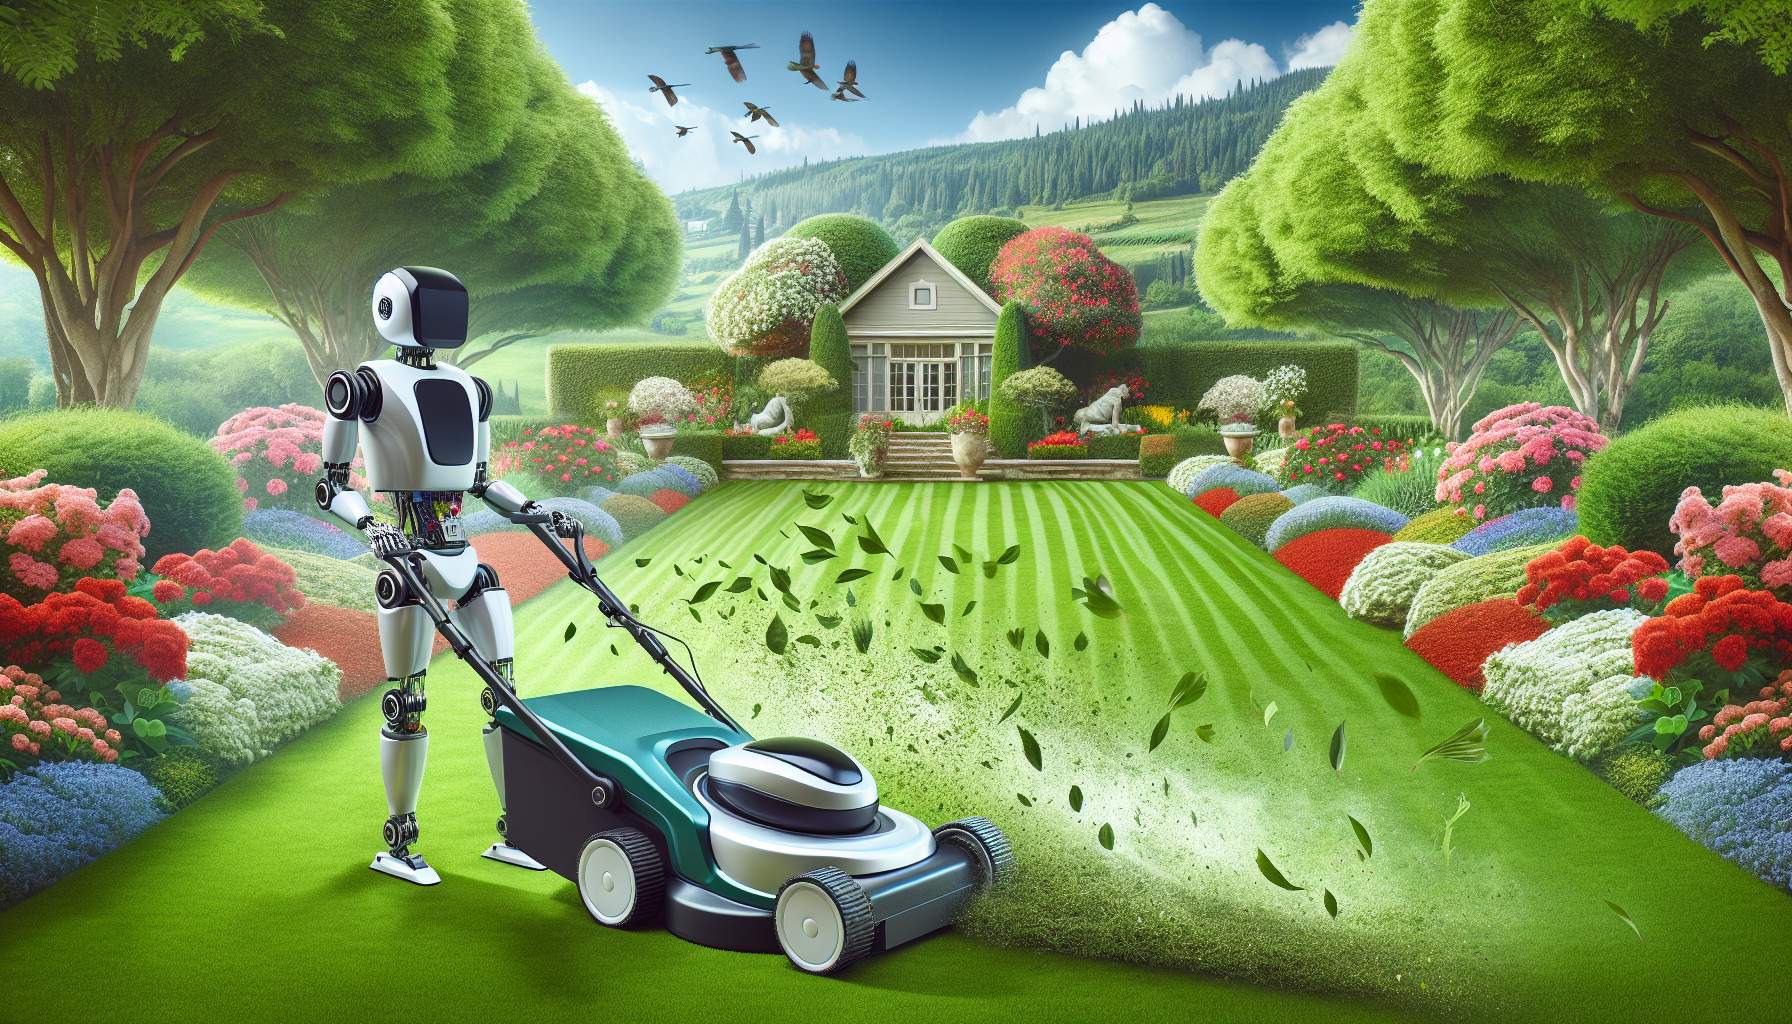 découvrez le robot tondeuse gardenna, la solution ultime pour garder votre jardin parfaitement entretenu grâce à ses performances exceptionnelles et sa facilité d'utilisation.